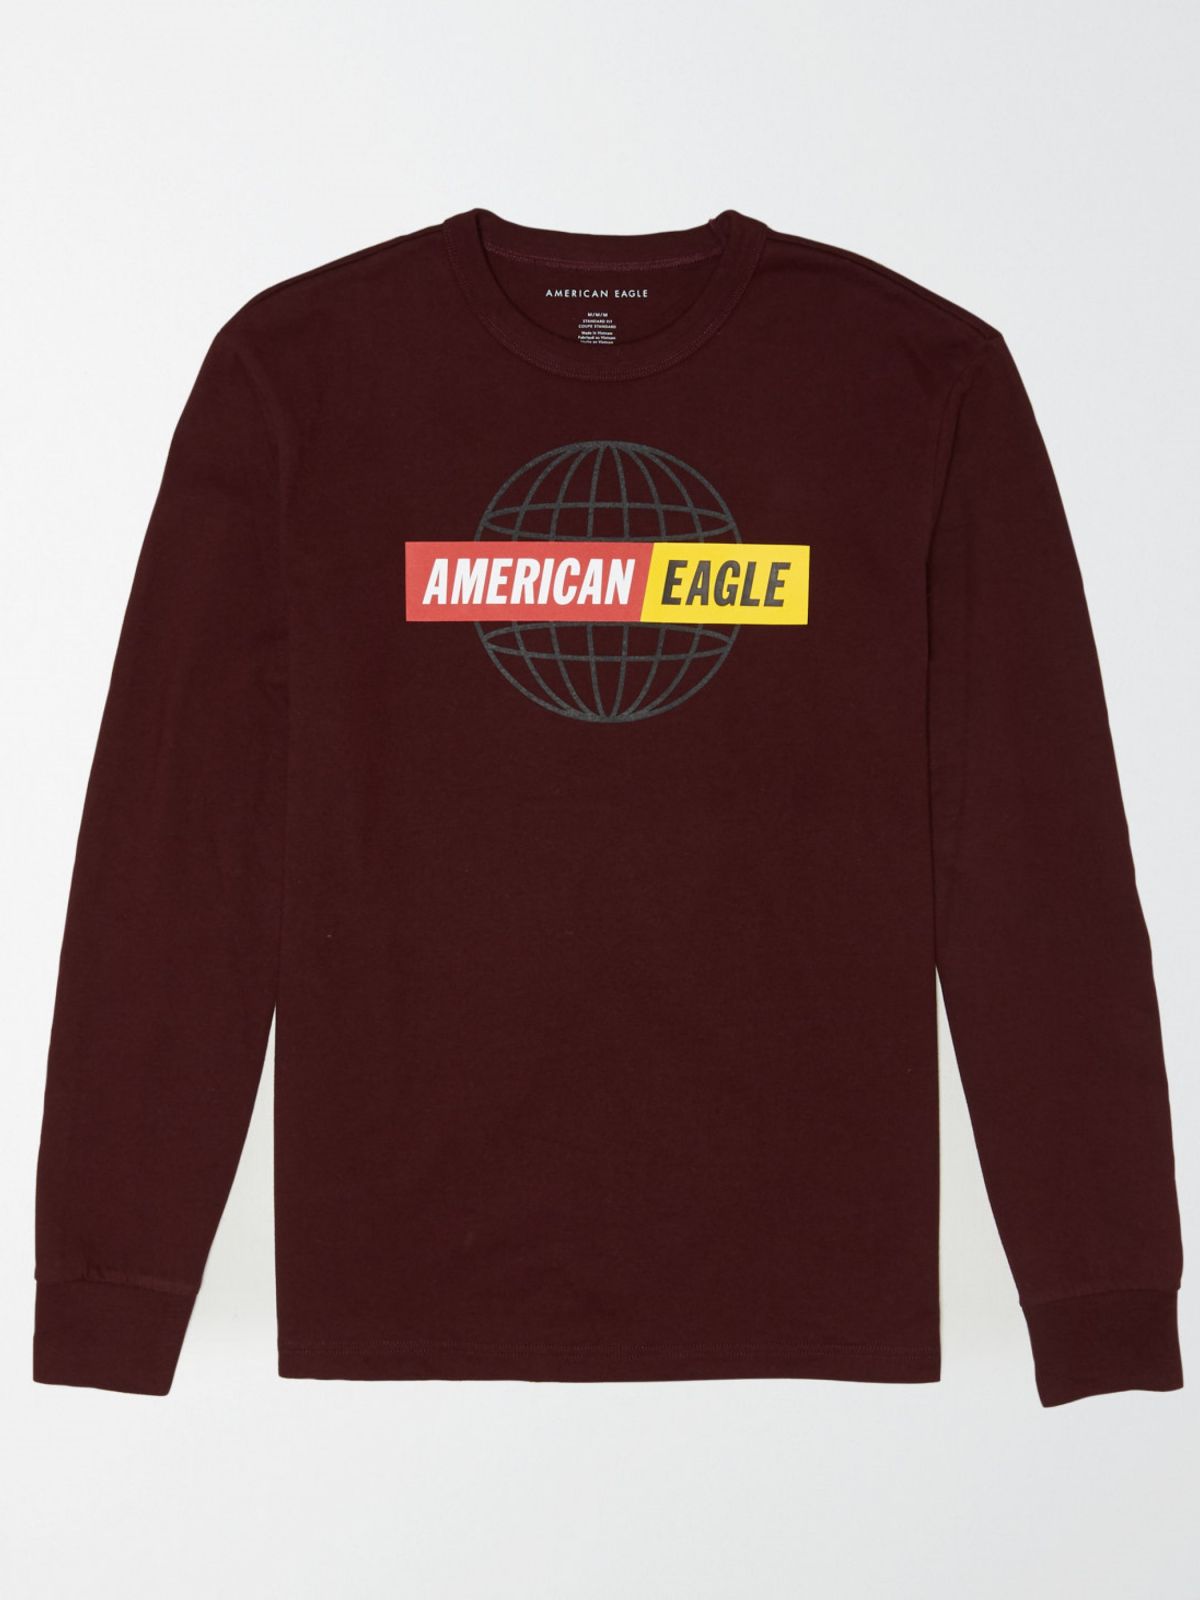  טי שירט שרוולים ארוכים עם לוגו / גברים של AMERICAN EAGLE